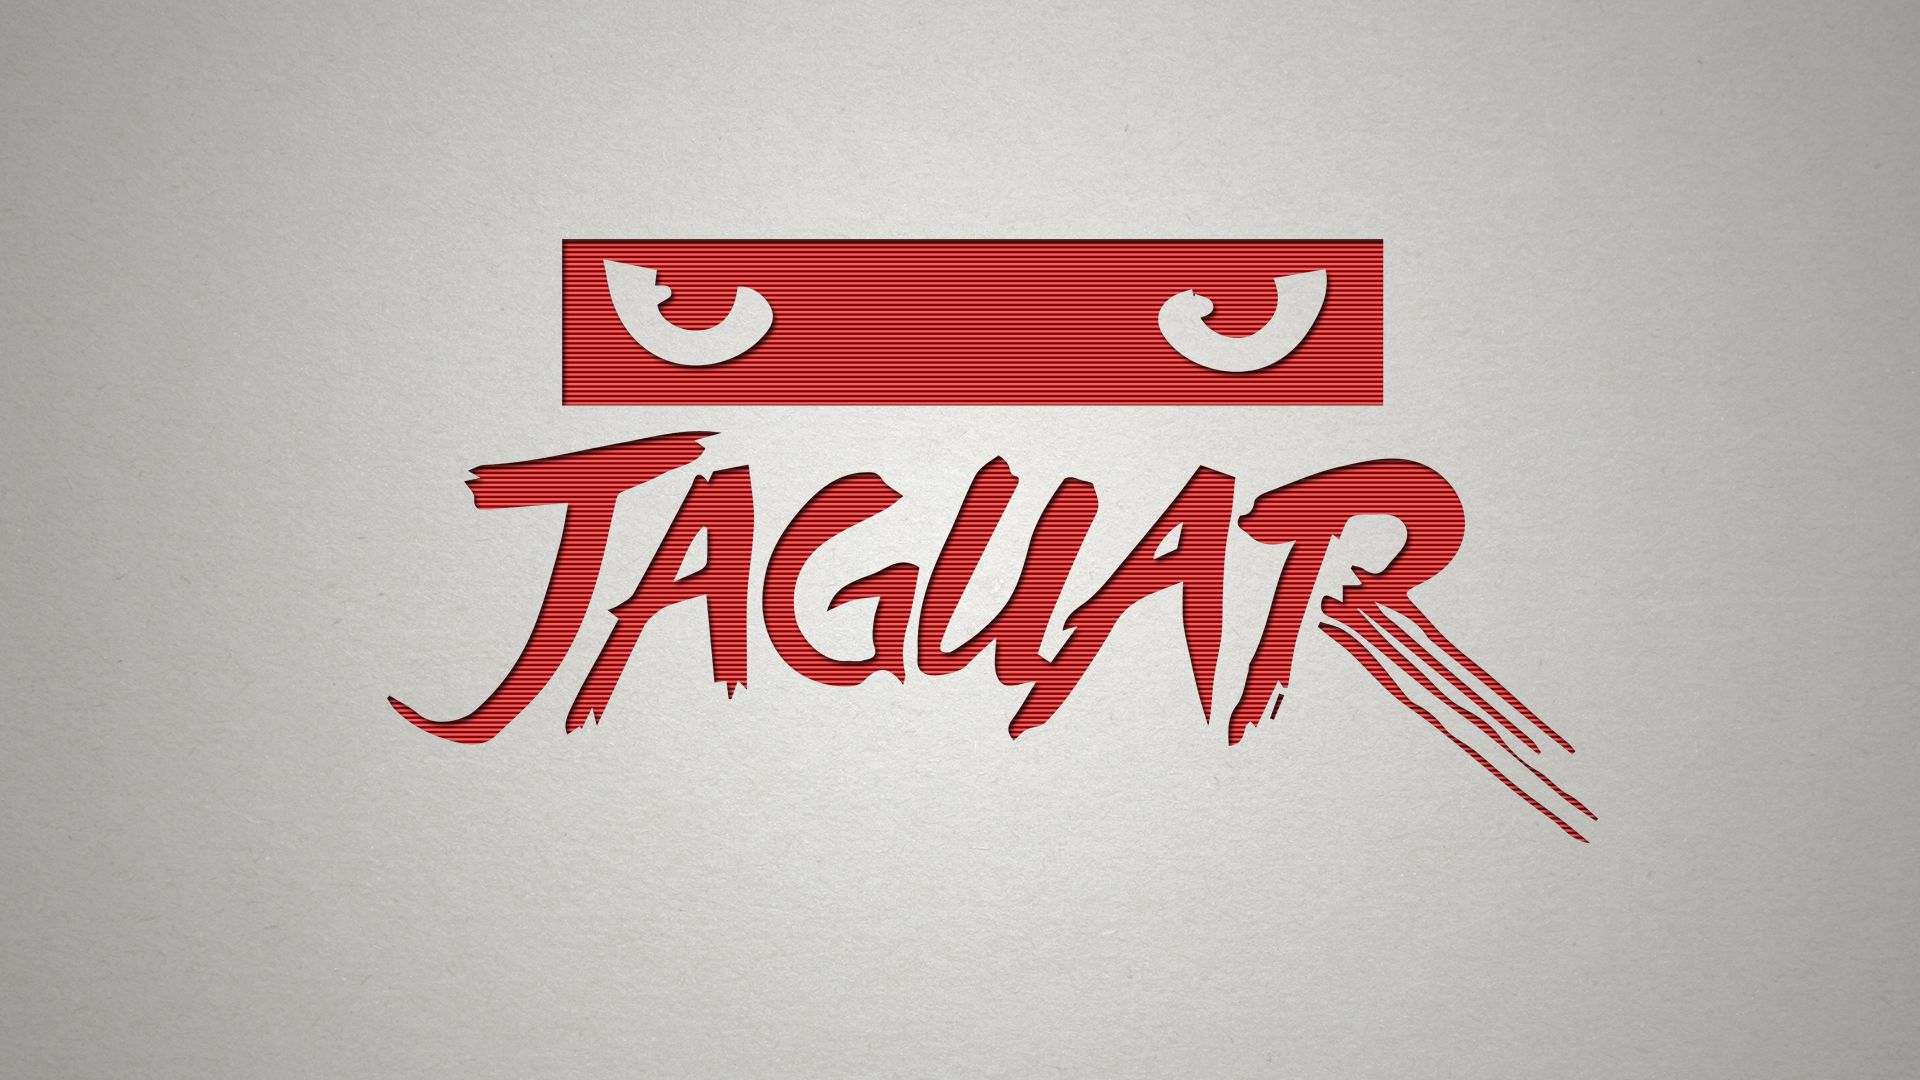 Descargar fondos de escritorio de Atari Jaguar HD